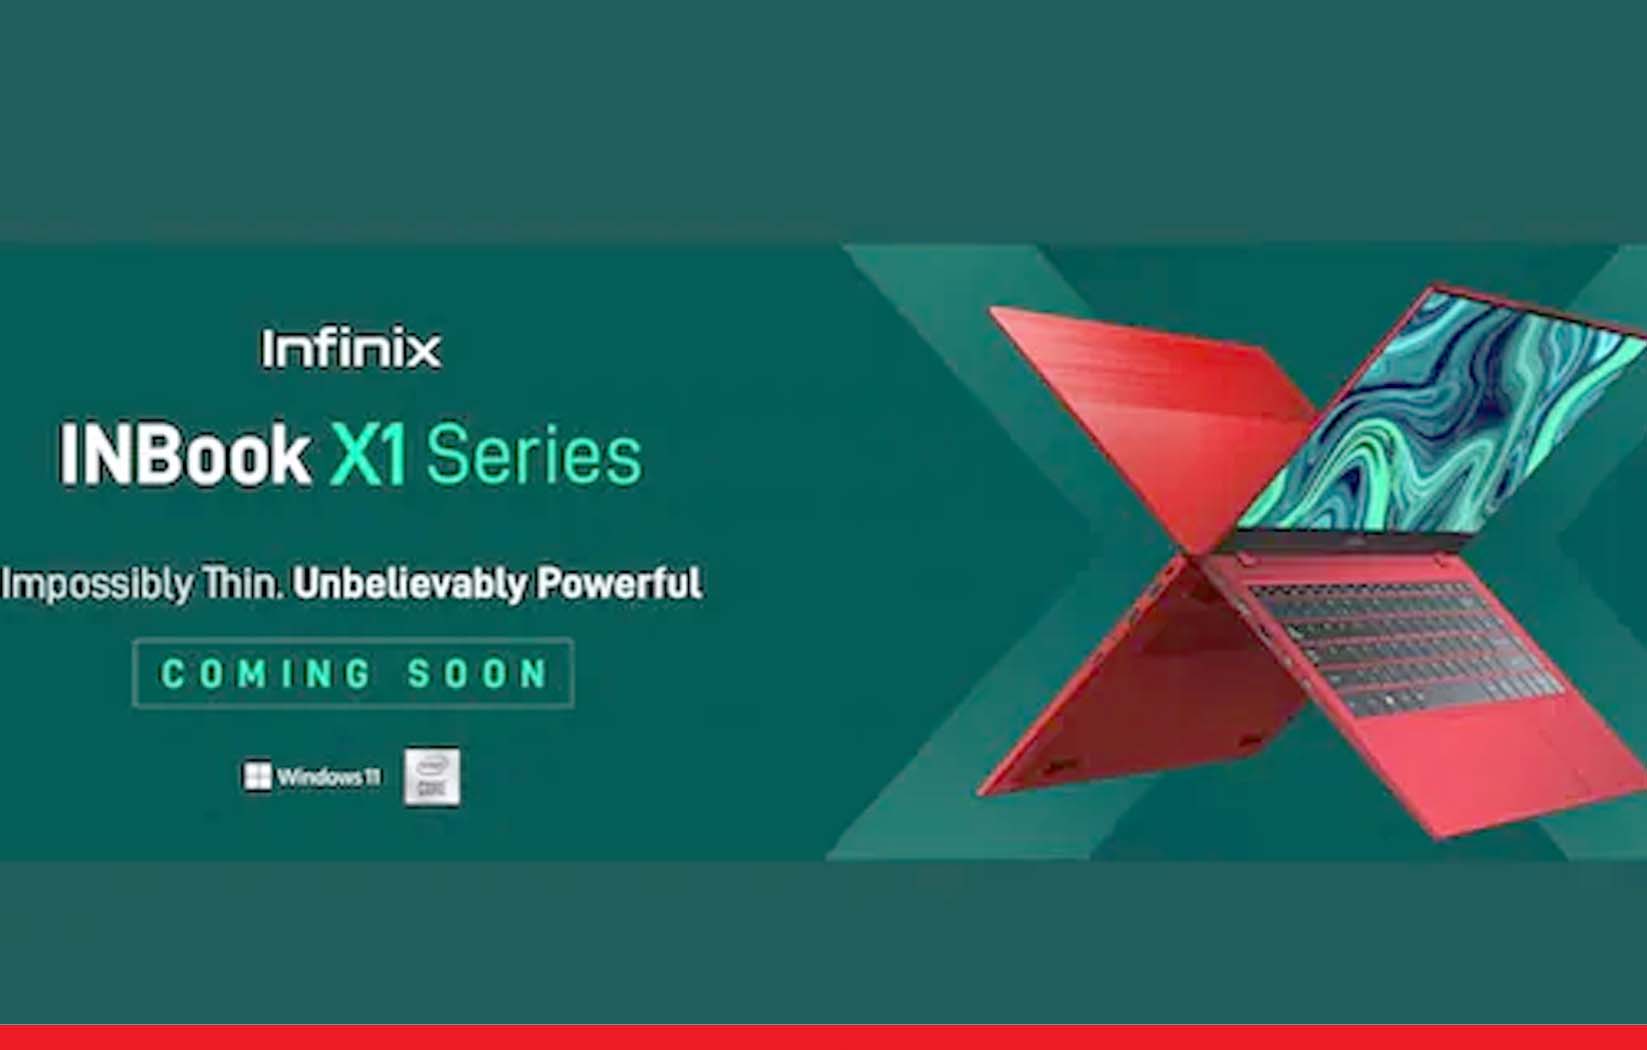 13 घंटे की बैटरी लाइफ के साथ भारत में आ रहा है Infinix का लैपटॉप